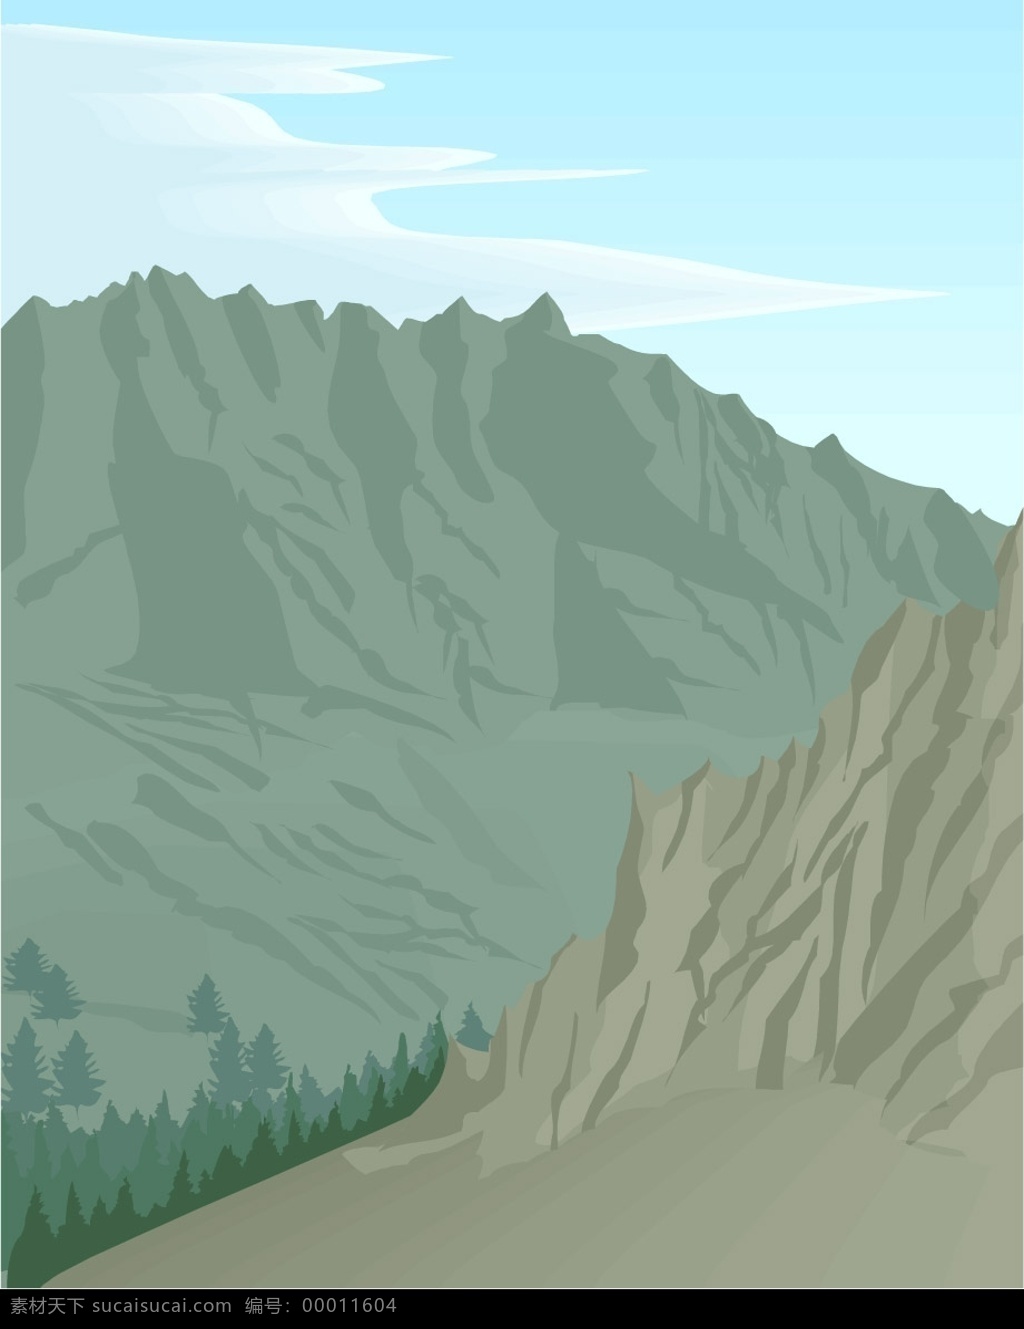 高山与山林 其他矢量 矢量素材 自然风景插画 矢量图库